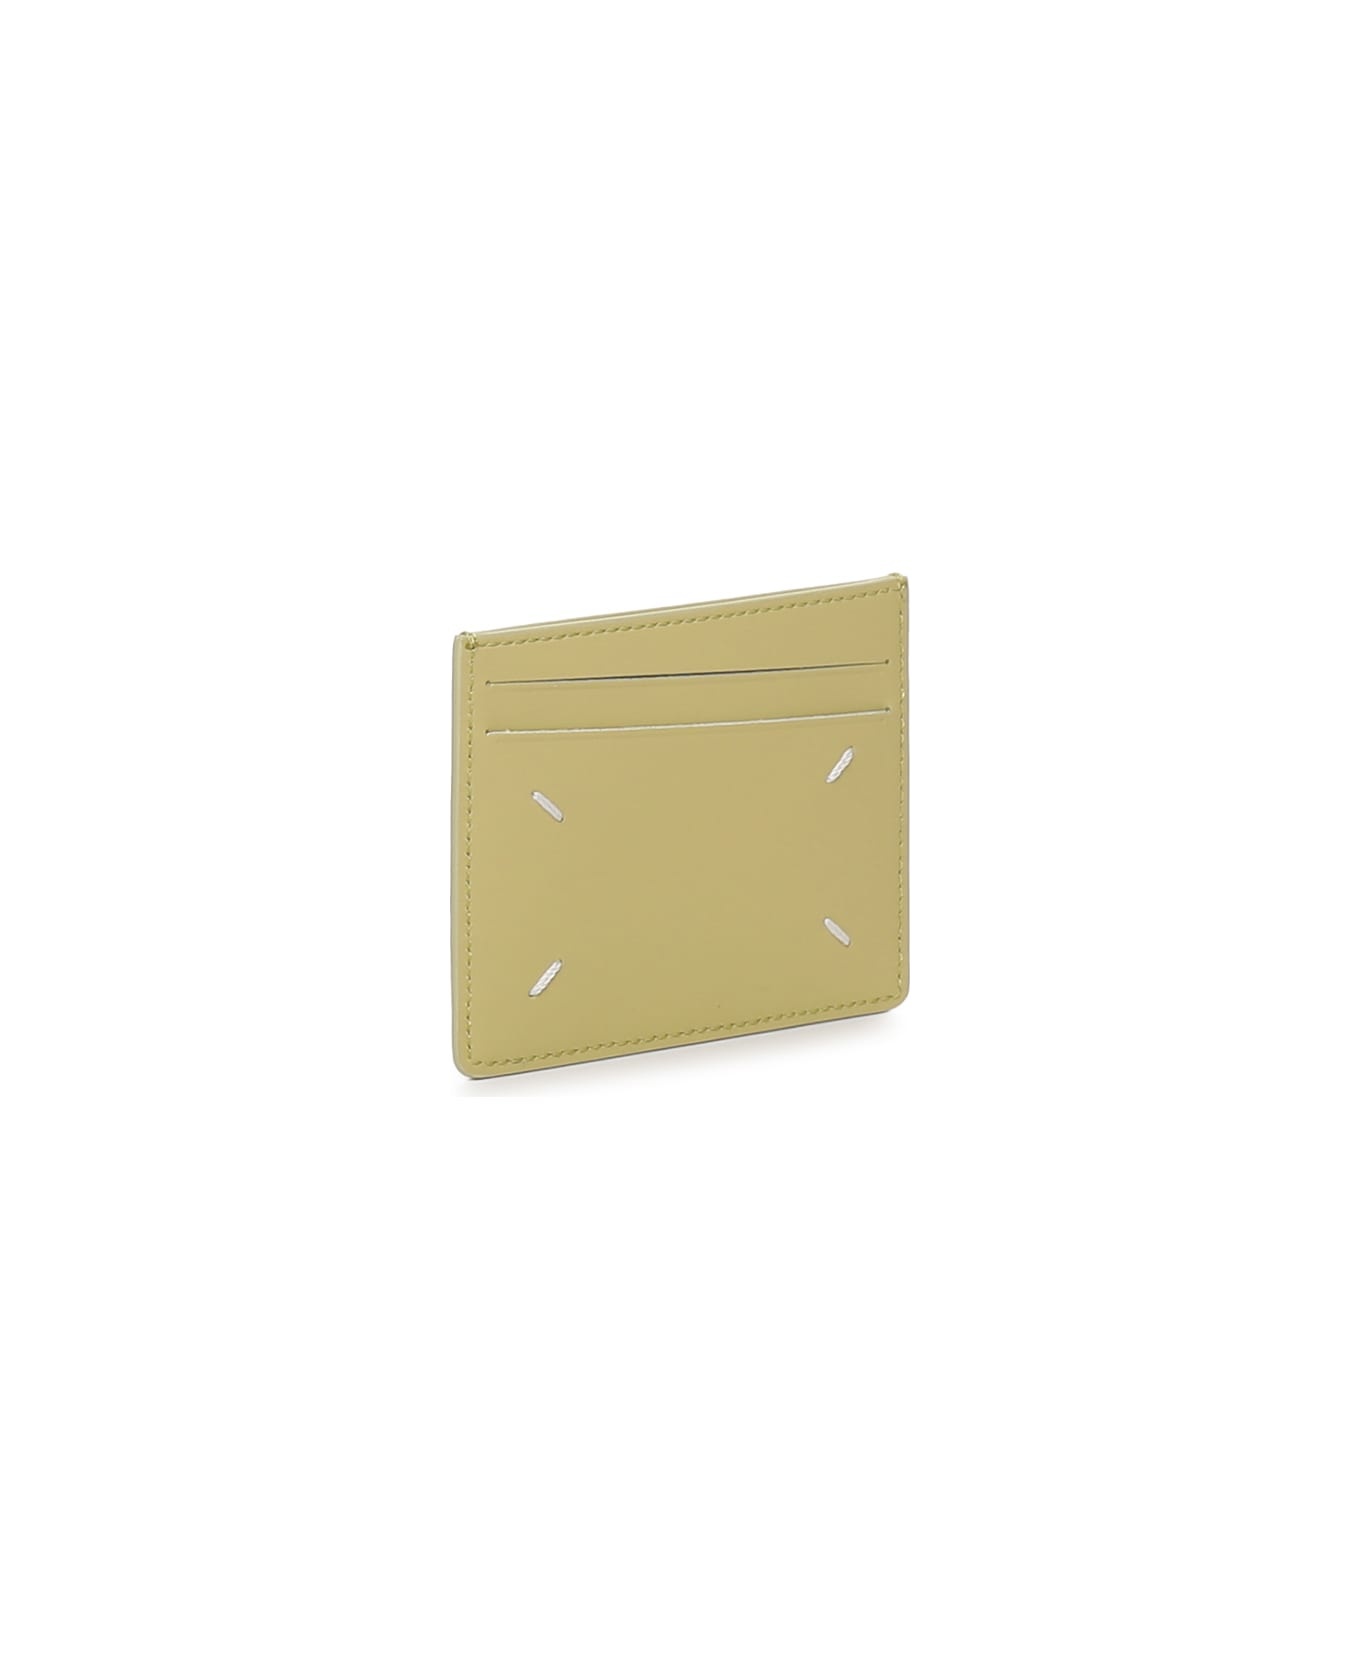 Lime Leather Cardholder - 2